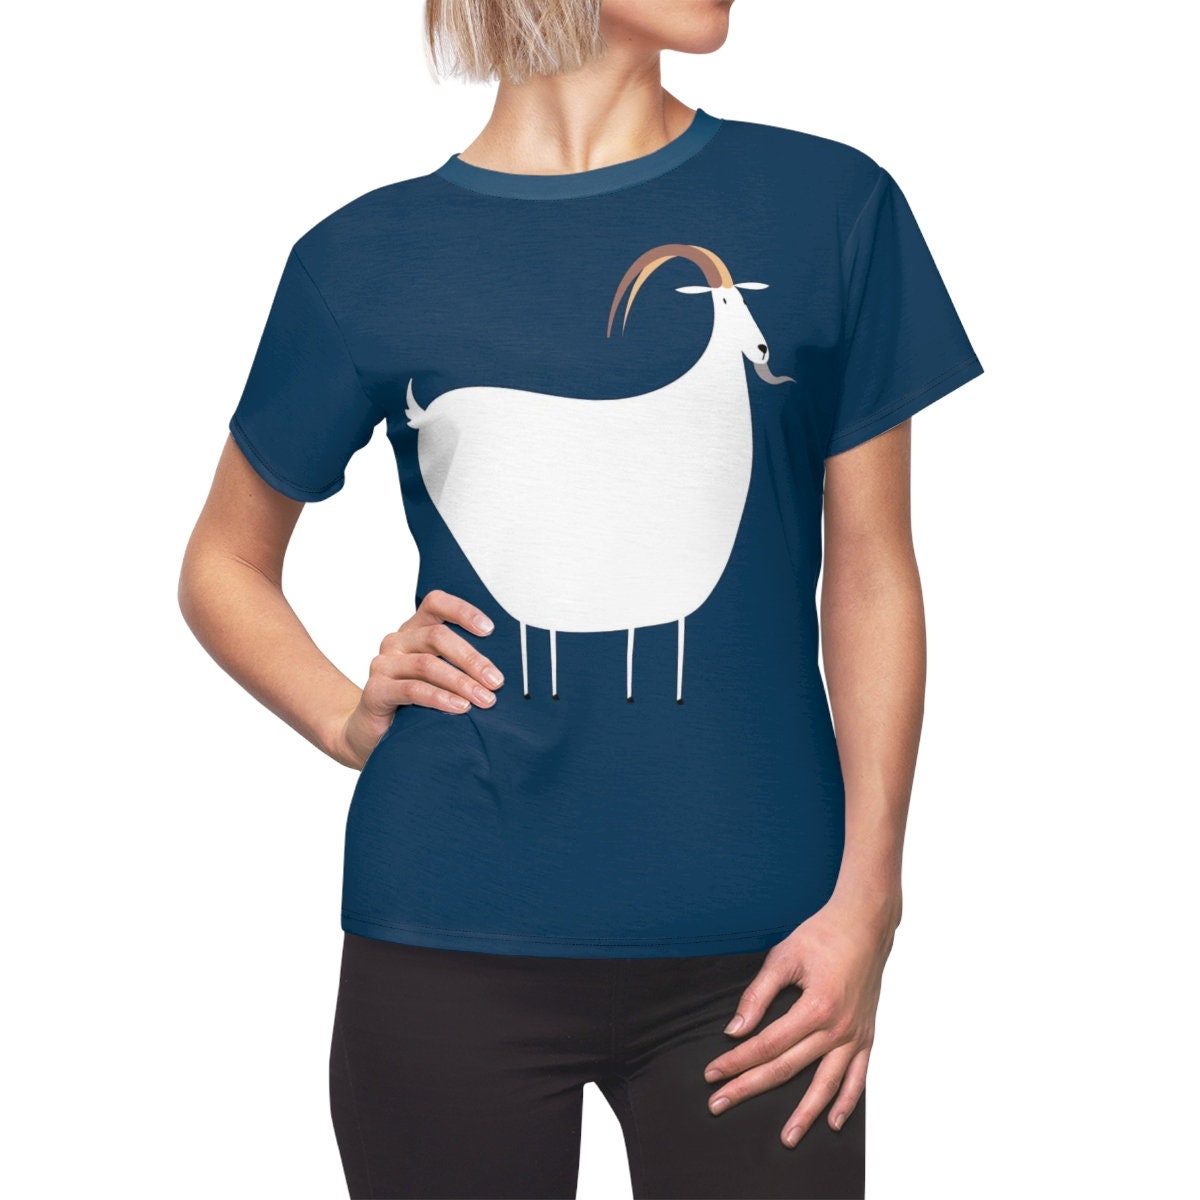 Year of the Goat / Astrology / Chinese / Zodiac / T-shirt / Tee / Shirt / Goat / Art / Valentine / Birthday / Clothing / Gift for Her - Chloe Lambertin